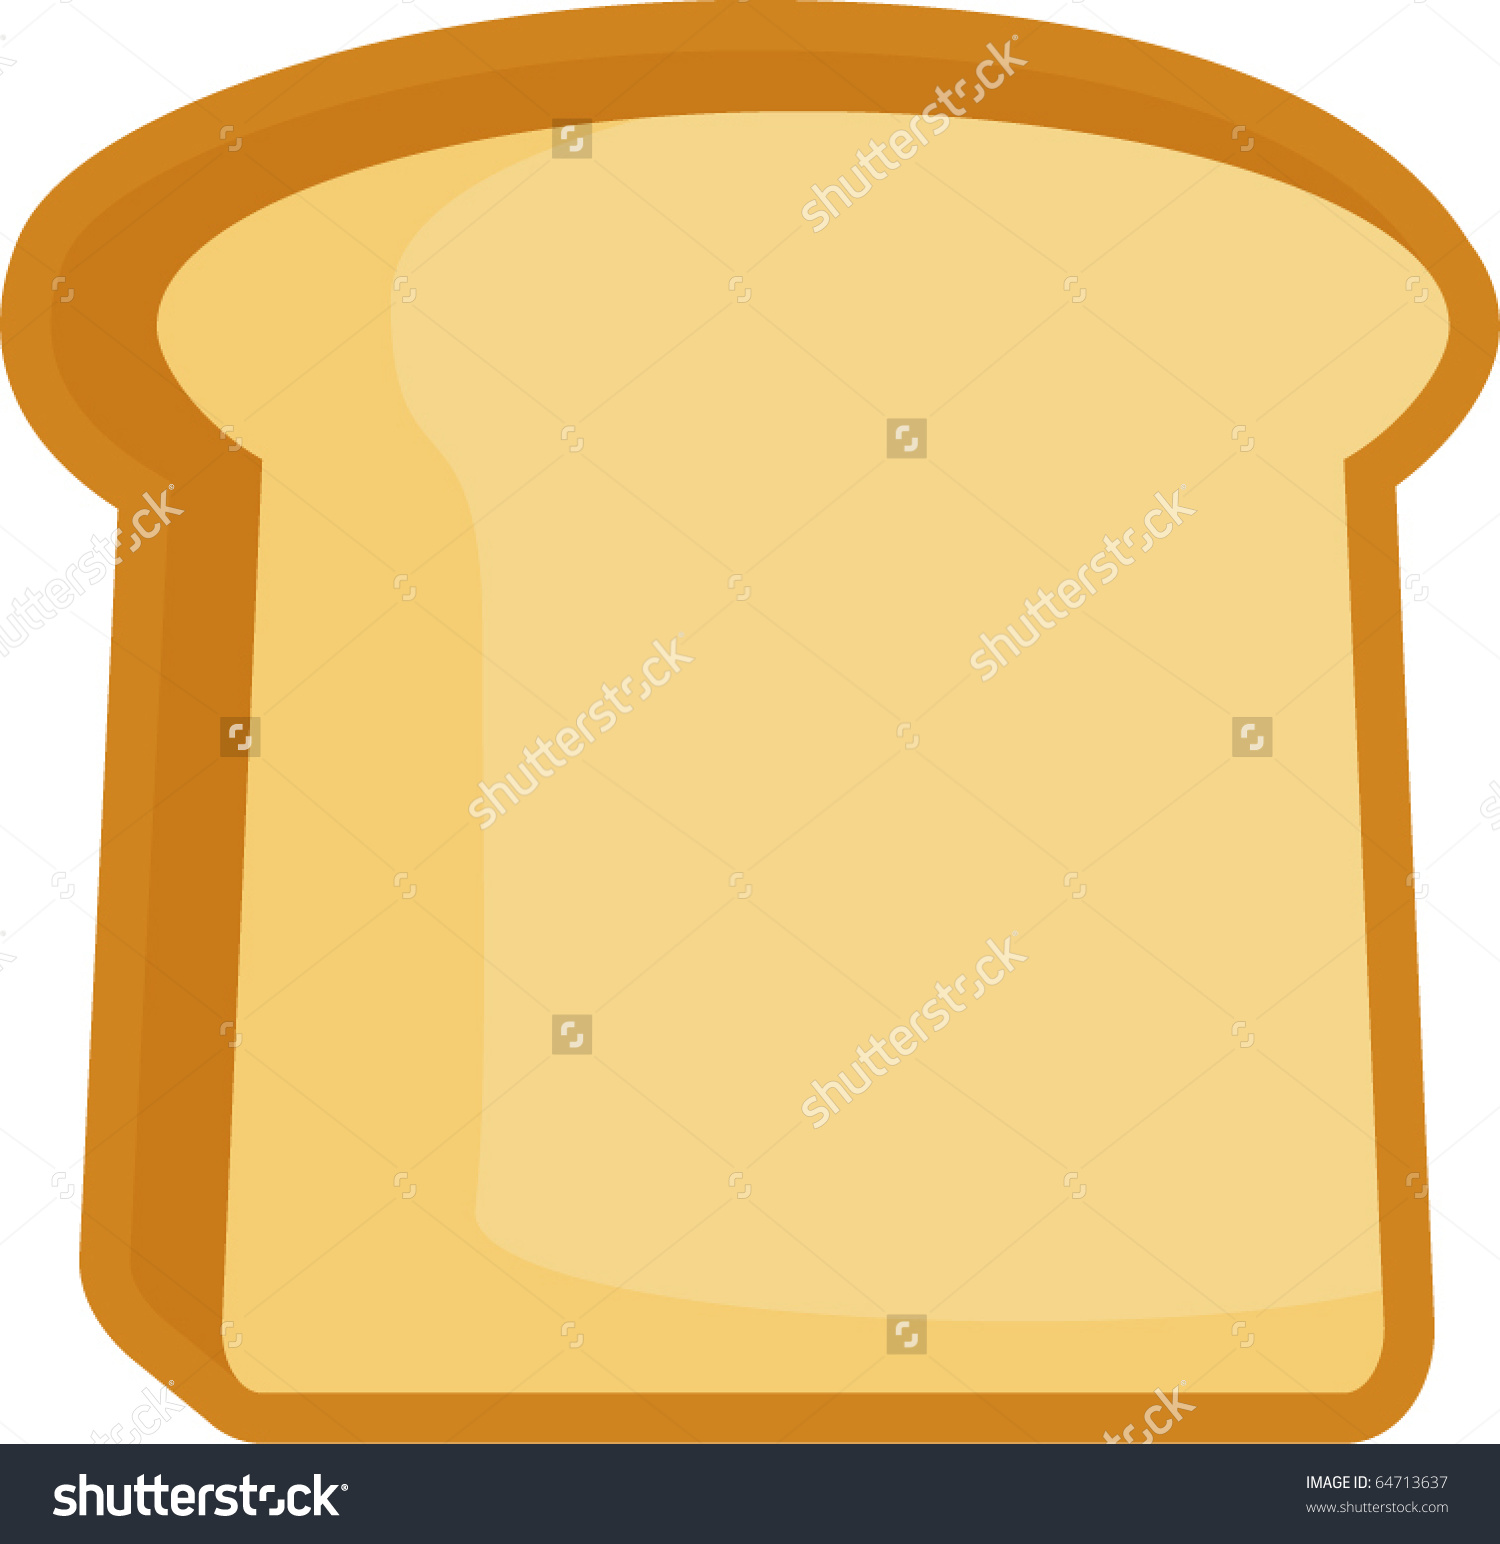 Slice of bread clipart - .